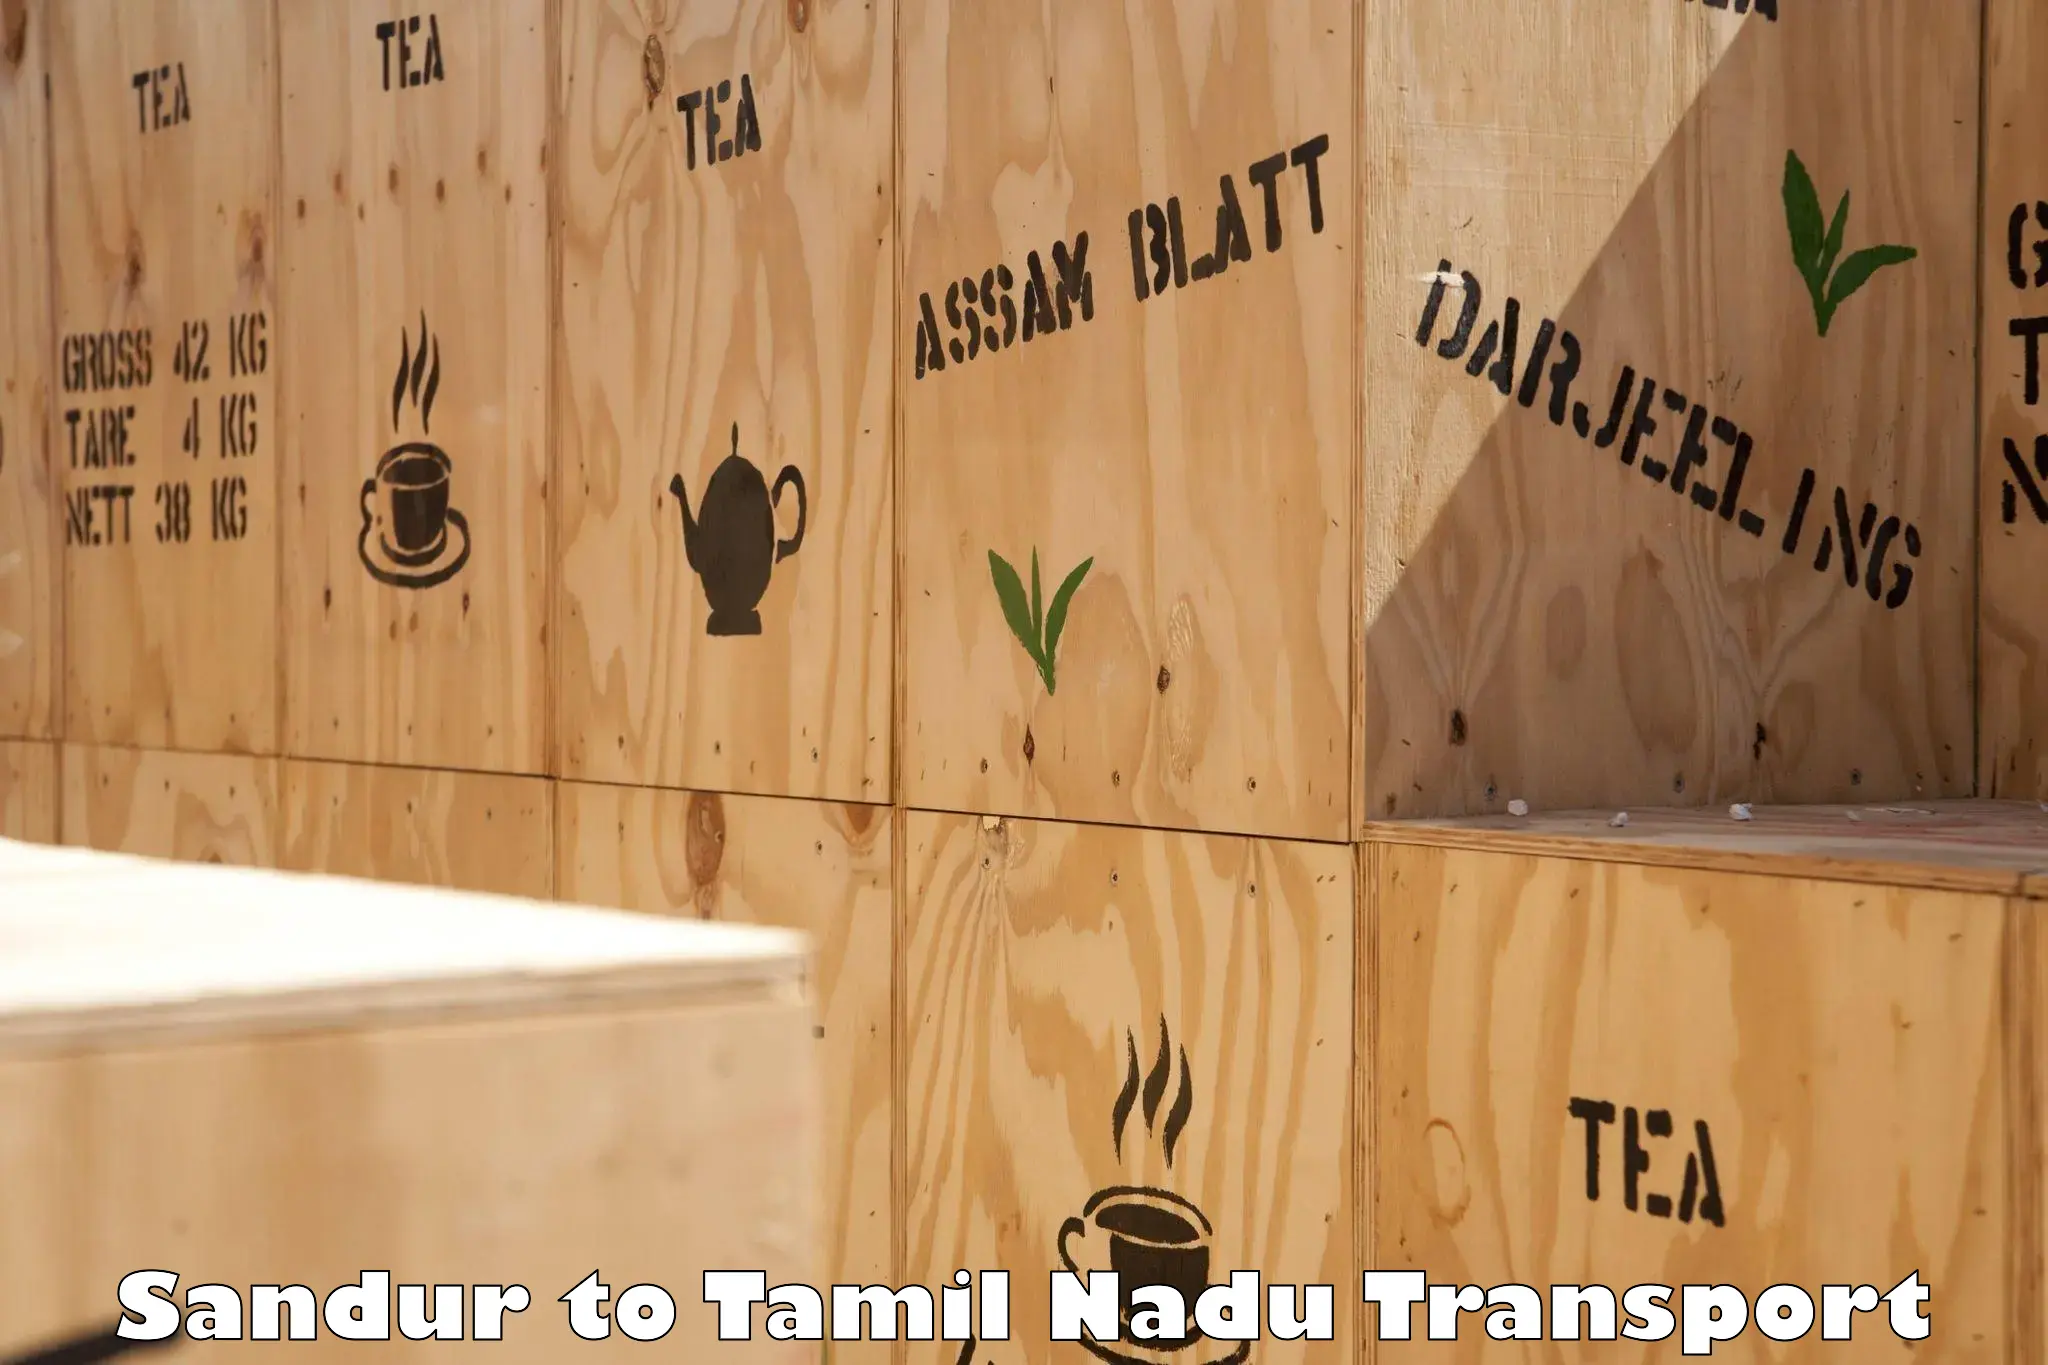 Shipping partner Sandur to Tamil Nadu